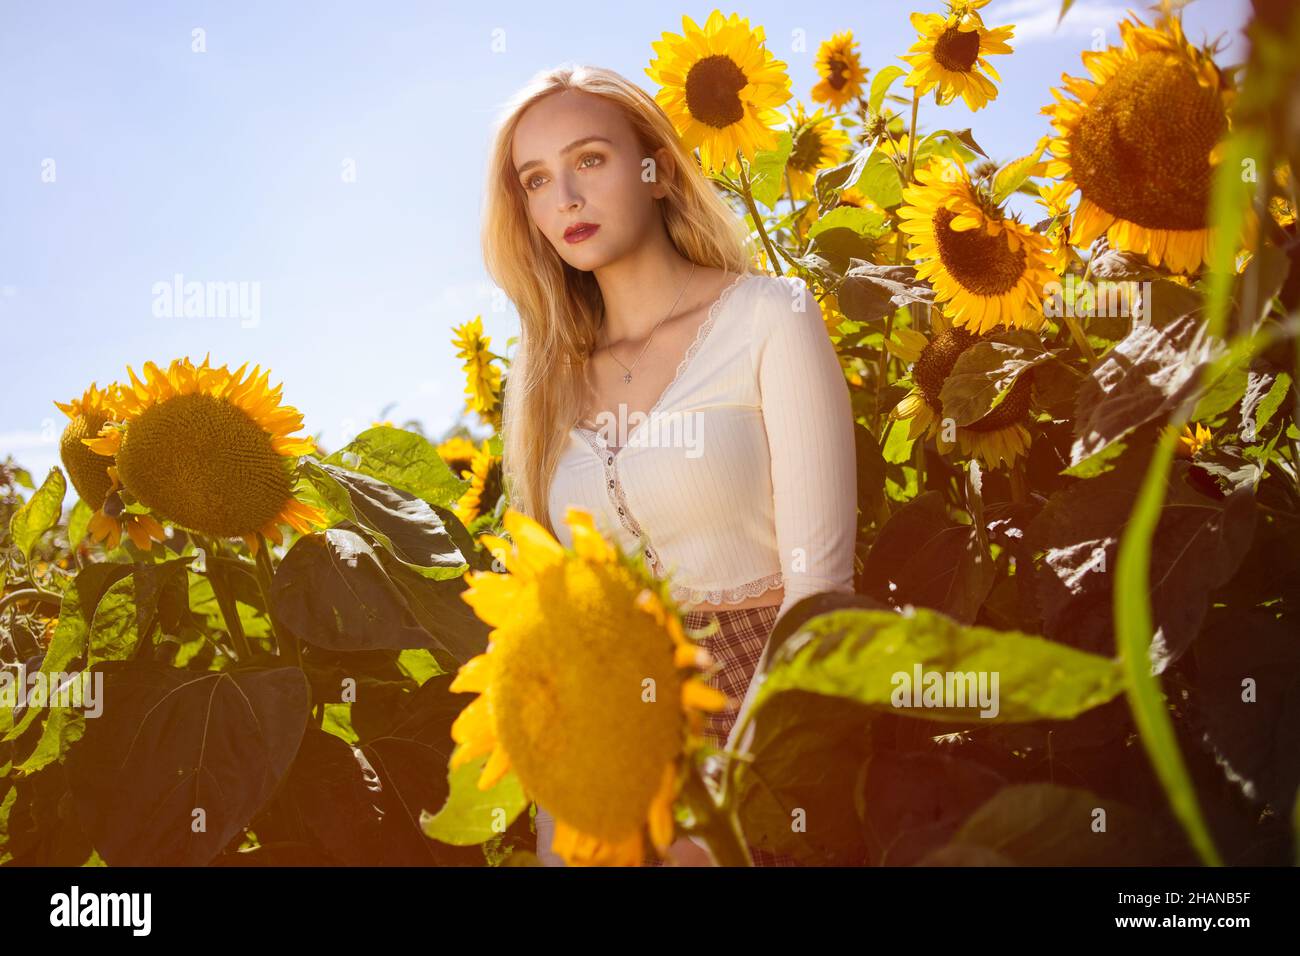 Schöne junge Frauen (22 Jahre) mit langen blonden Haaren posiert in einem Sonnenblumenfeld an einem heißen sonnigen Tag Stockfoto